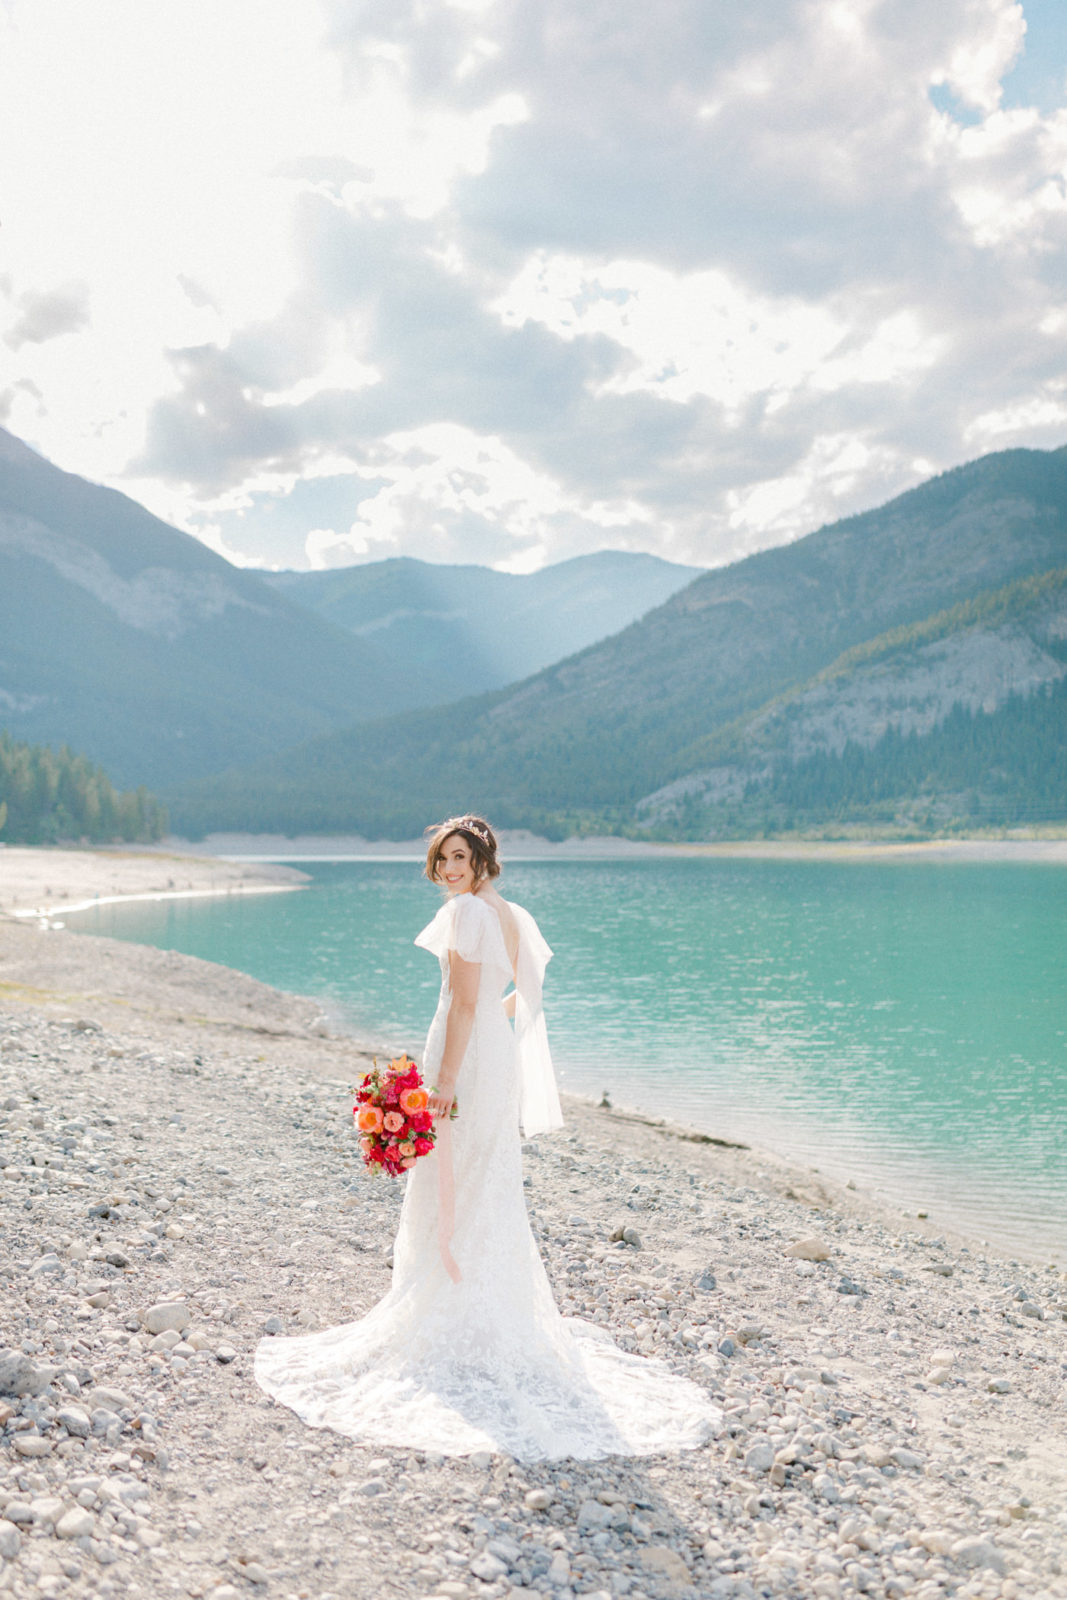 Vibrant Micro Wedding Inspiration at Barrier Lake, Kananaskis ...